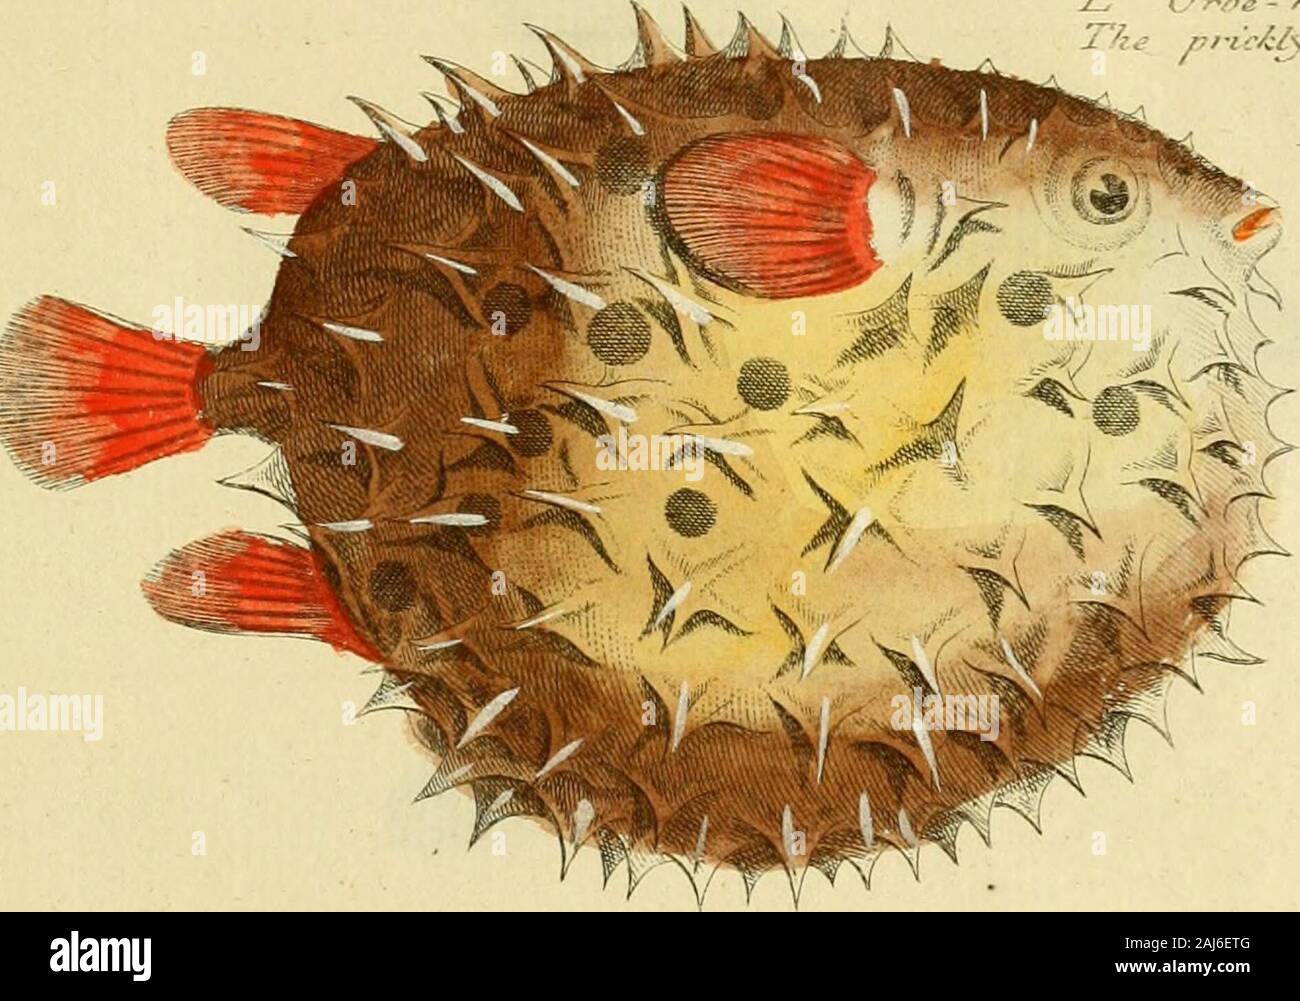 Ichthyologie; ou histoire naturelle de poissons De sechs Parteien avec 216 planches dessinÃ©es et enluminÃ © es d'Après-ski natu. /. Jr, -12--.. OKBWULAJÛS? Stockfoto